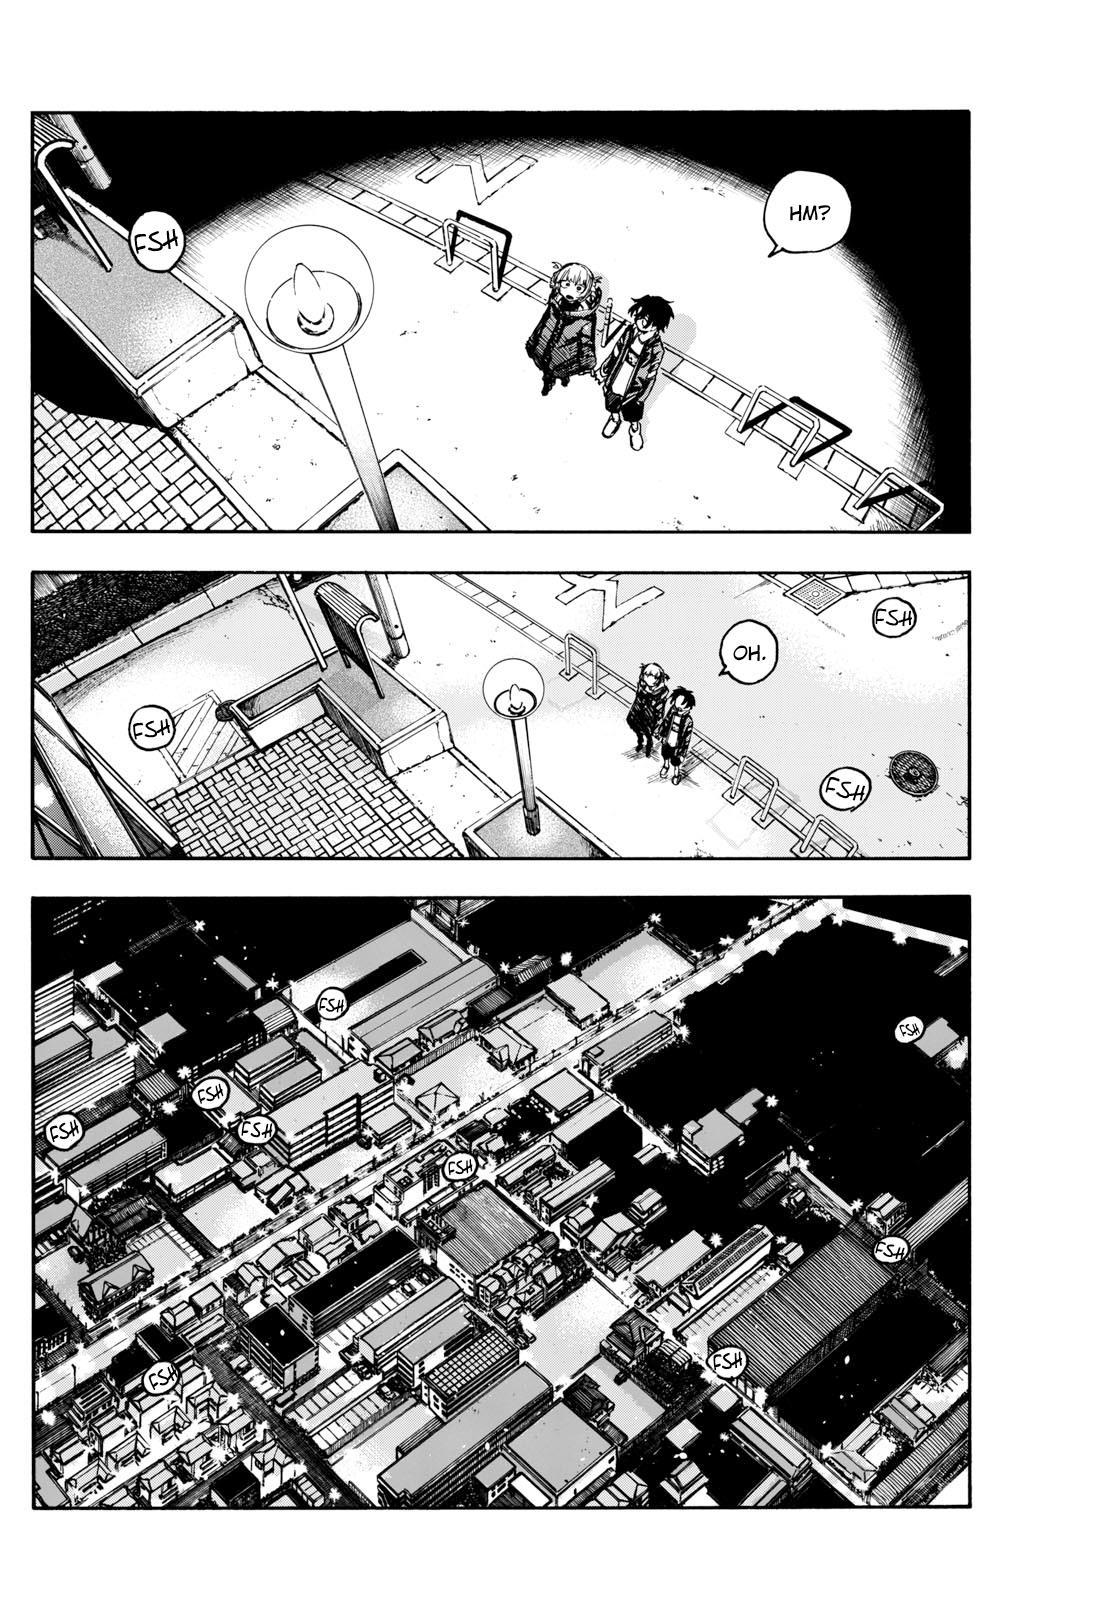 Yofukashi no Uta Vol.9 Ch.188 Page 2 - Mangago